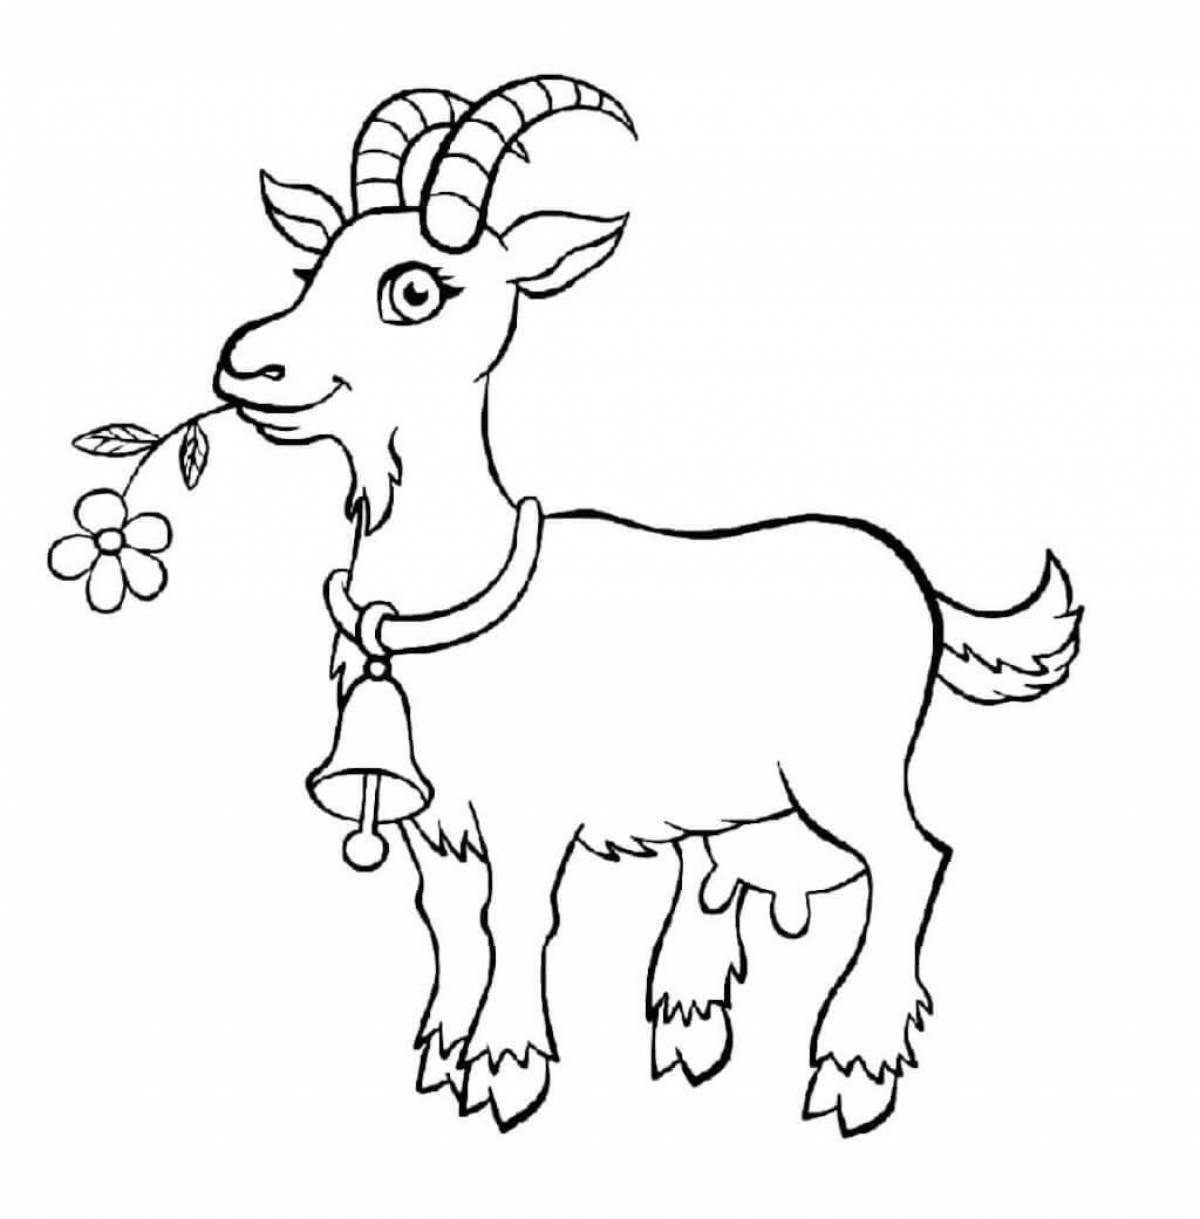 Юмористическая раскраска коз для детей